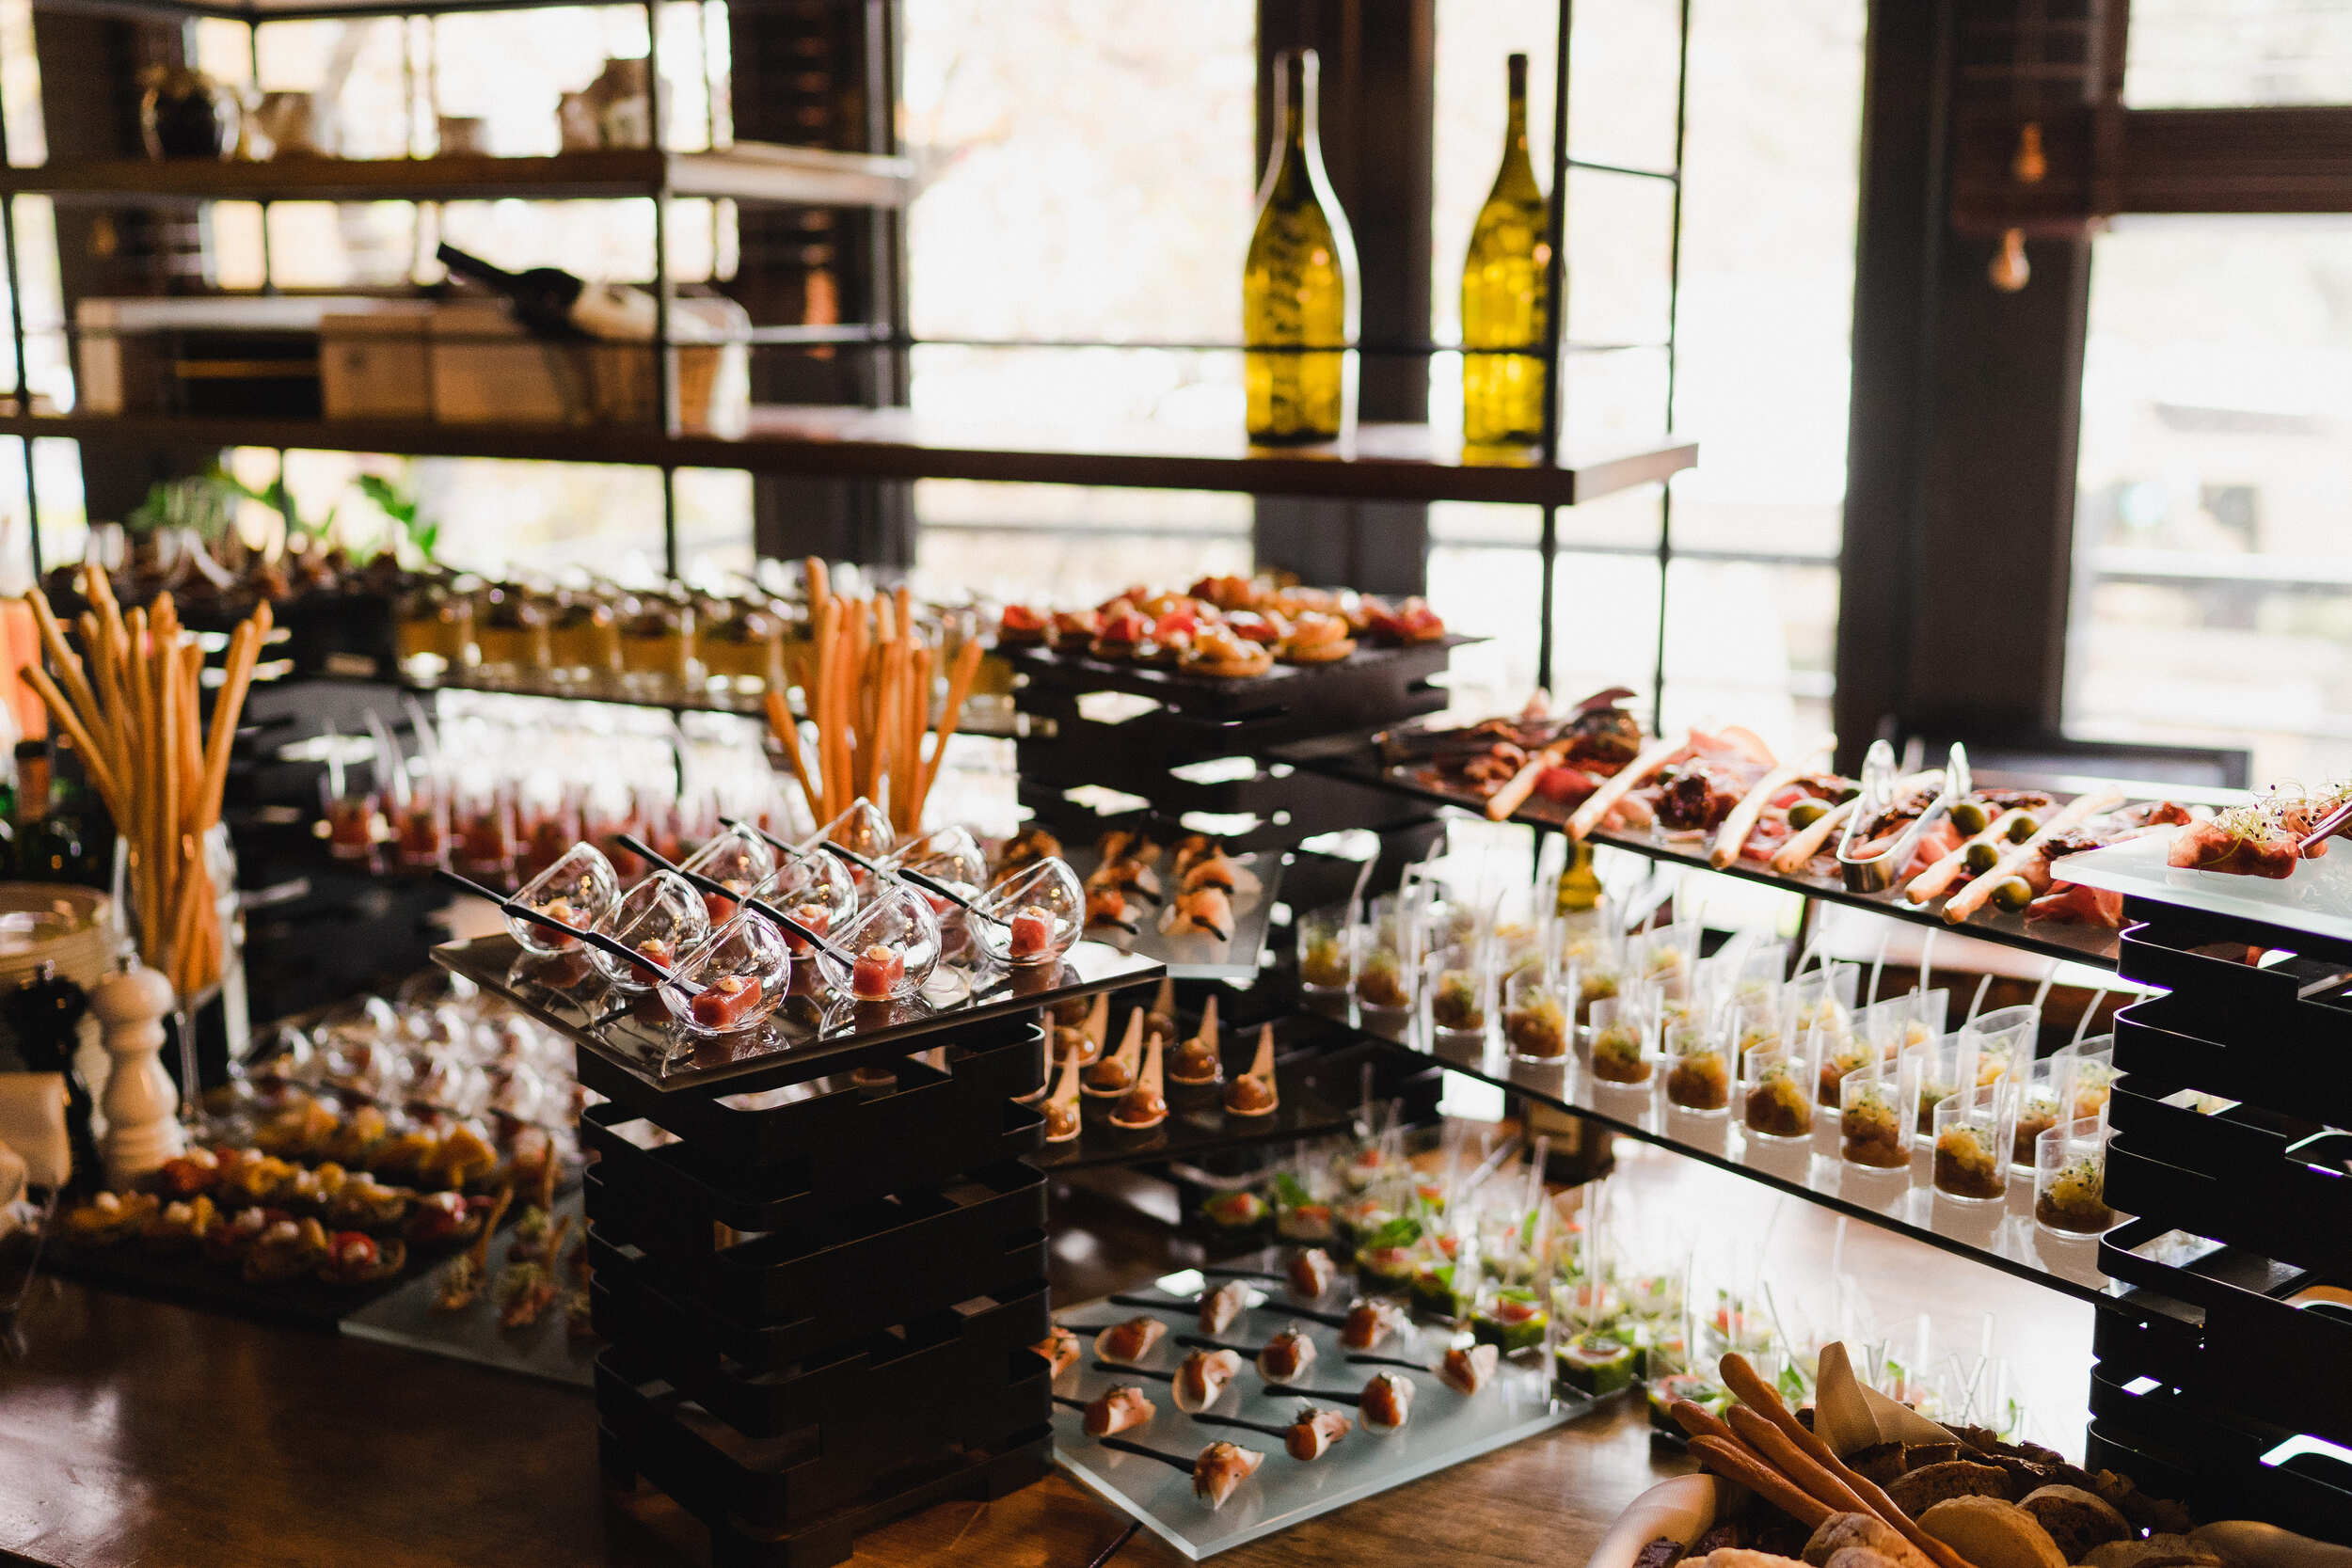 Les avantages du catering pour les entreprises : gain de temps, organisation sereine… et plaisirs gourmands !